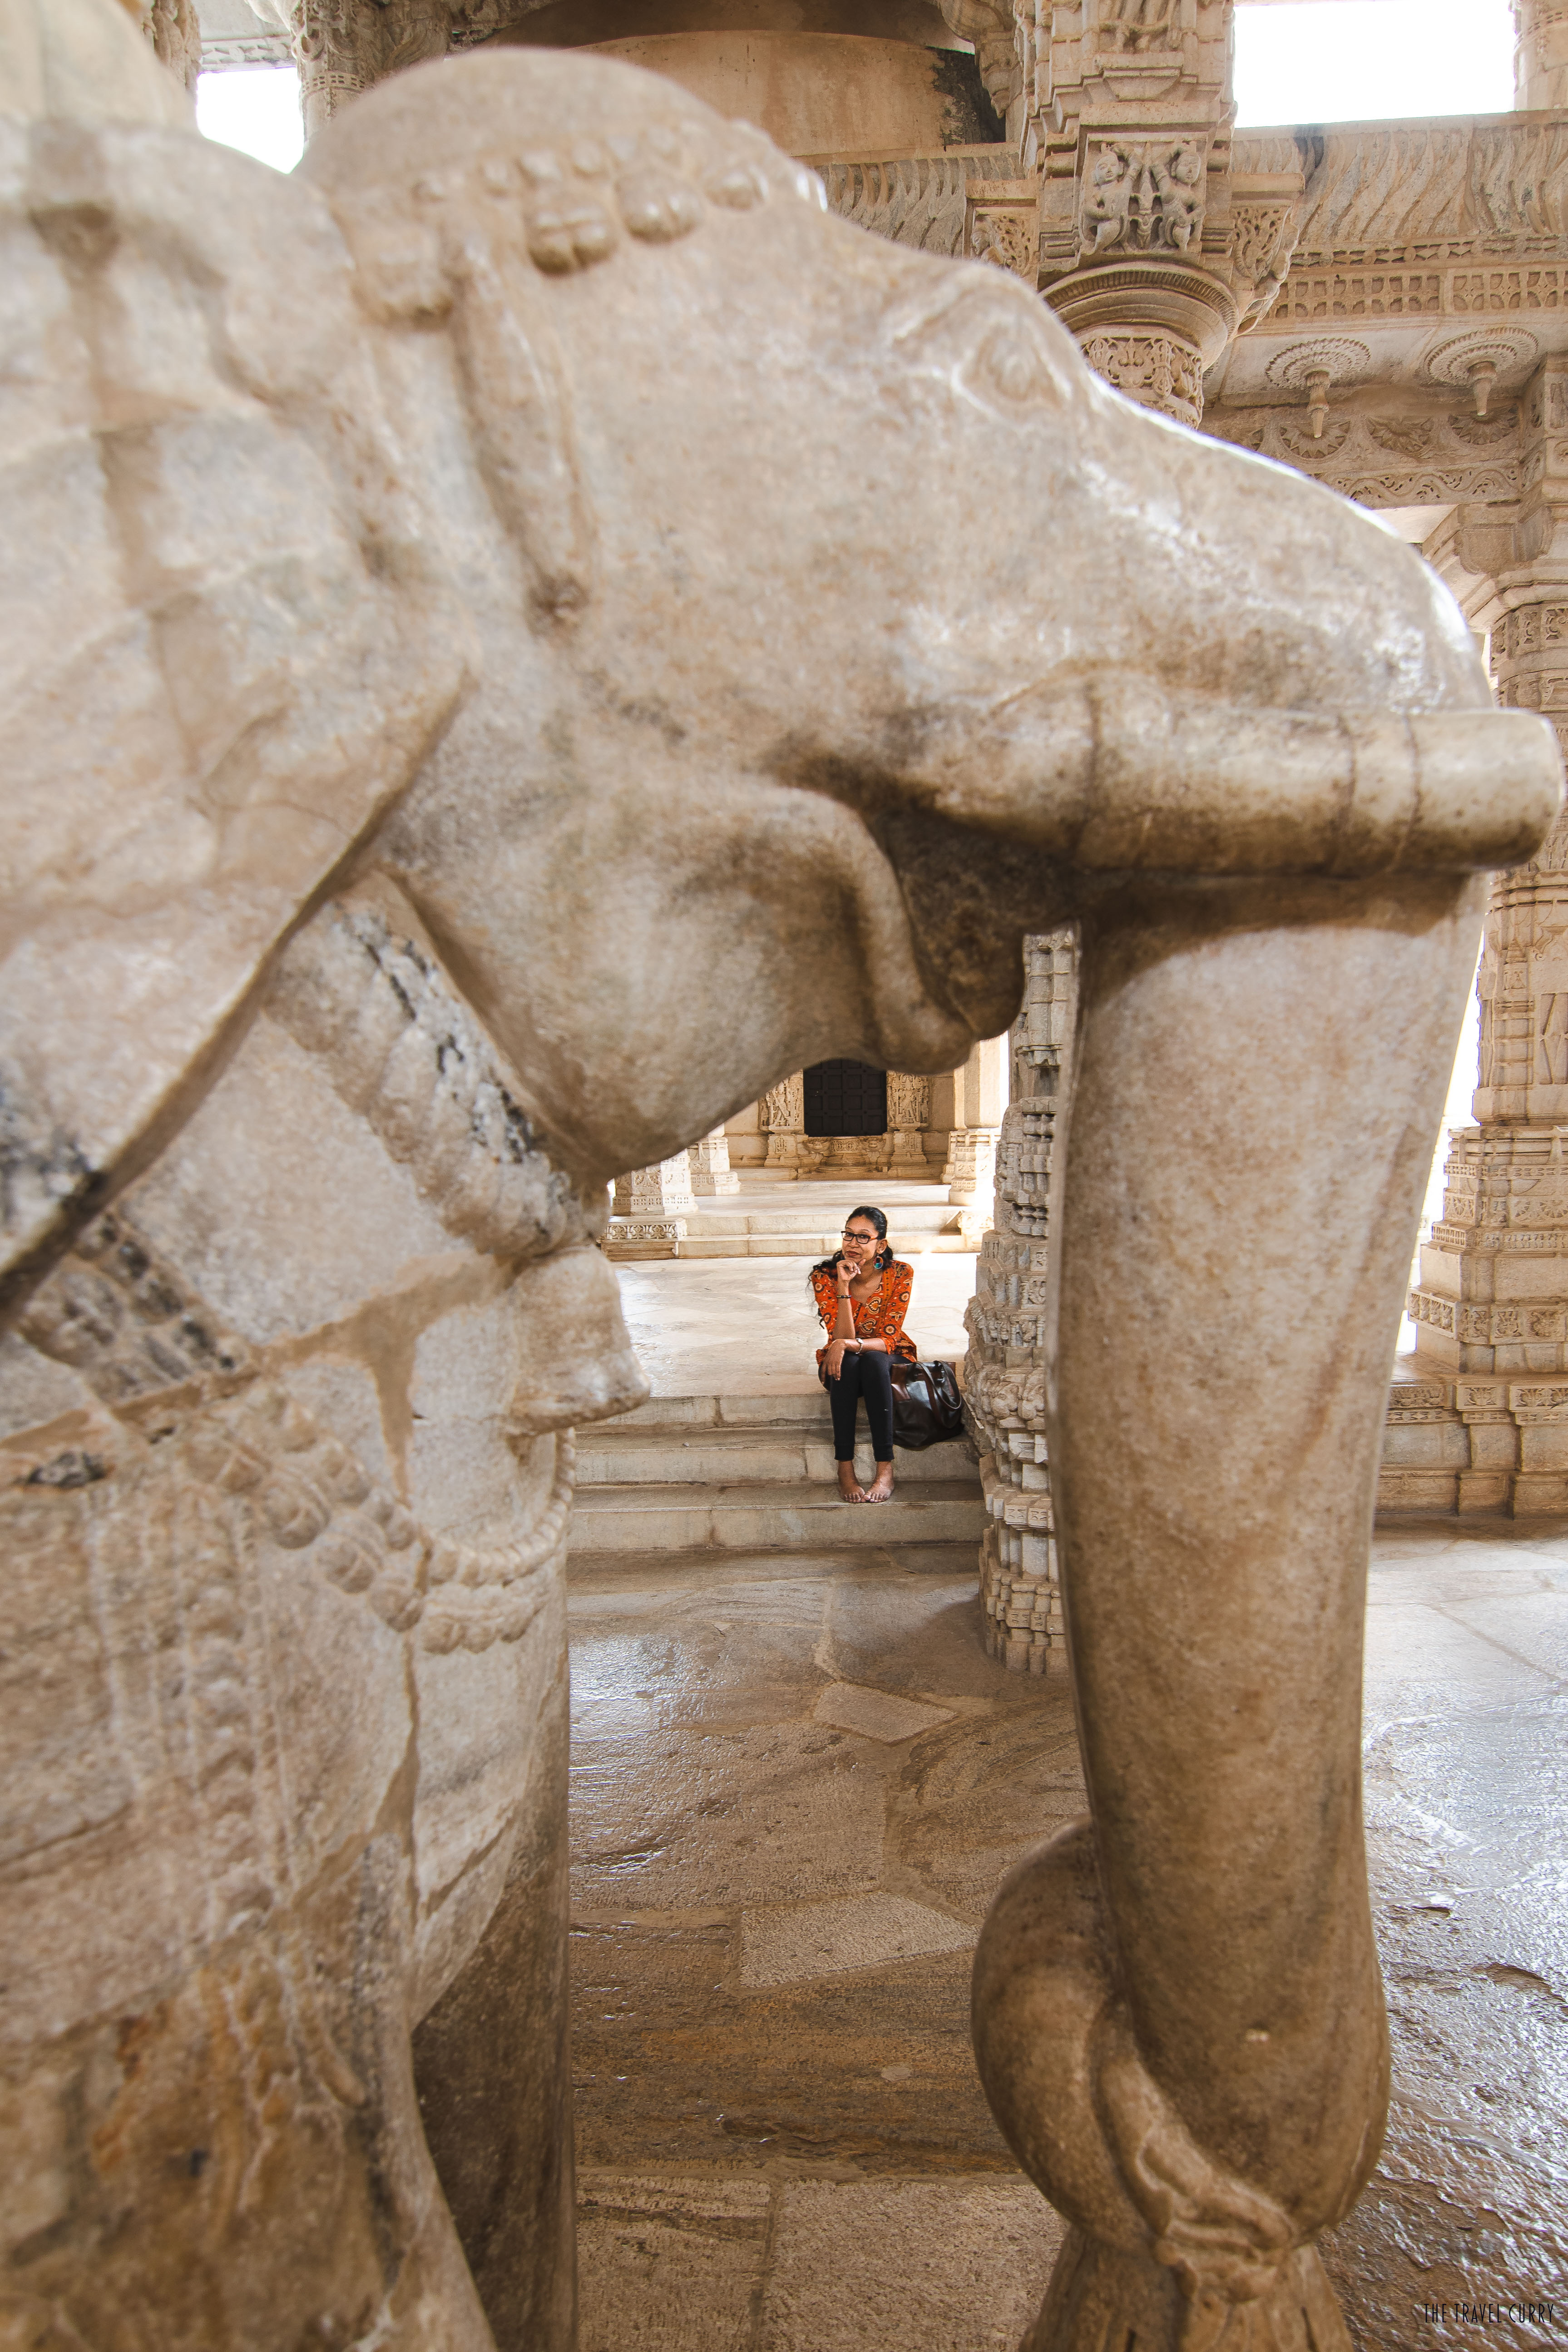 Inside Rankpur Temple